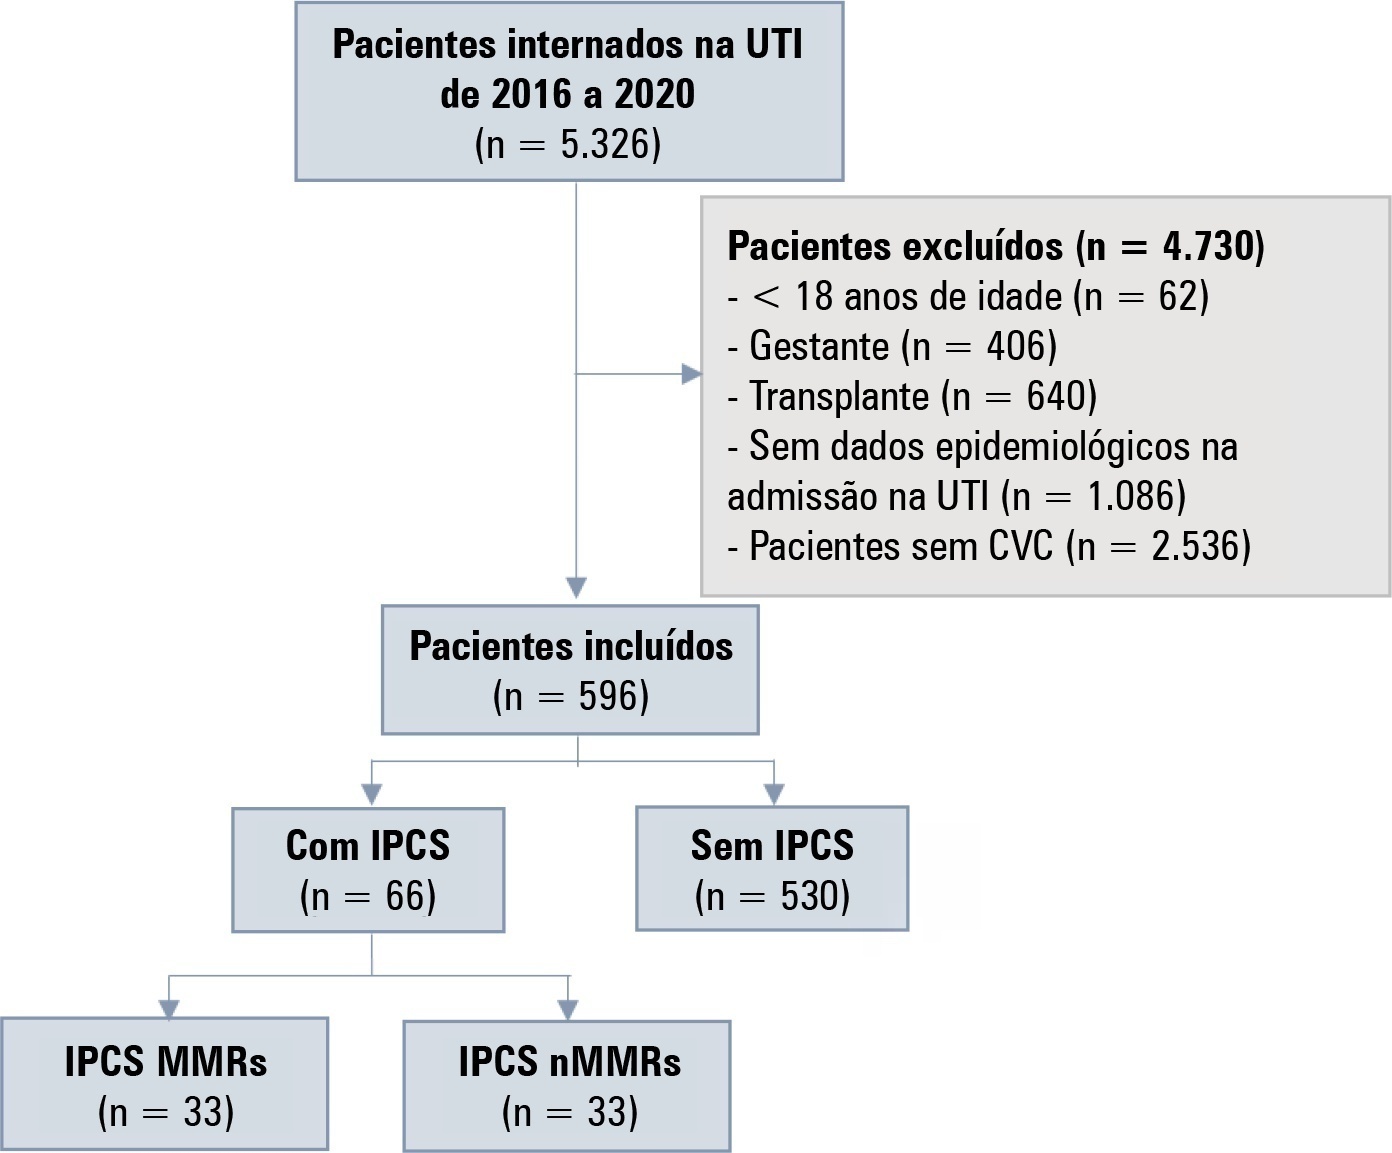 Custos de pacientes com infecções da corrente sanguínea associadas a cateter central causadas por microrganismos multirresistentes em uma unidade de terapia intensiva pública no Brasil: um estudo de coorte retrospectivo